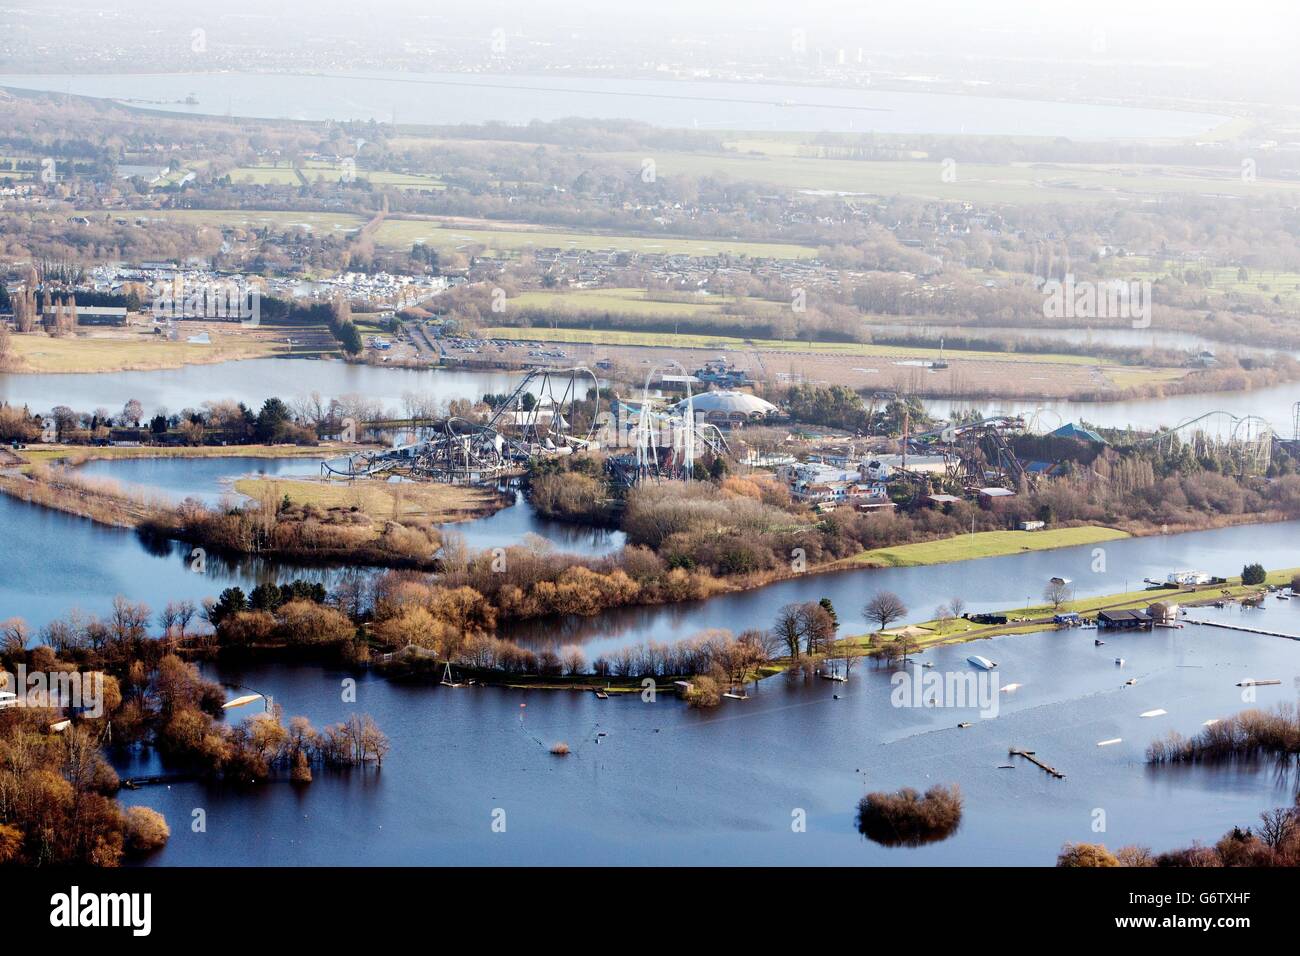 Der Thorpe Park in Surrey liegt im Hochwasserwasser, da Royal Engineers nun beauftragt wurde, eine schnelle Bewertung der Schäden an der britischen Hochwasserschutzinfrastruktur durchzuführen. Stockfoto